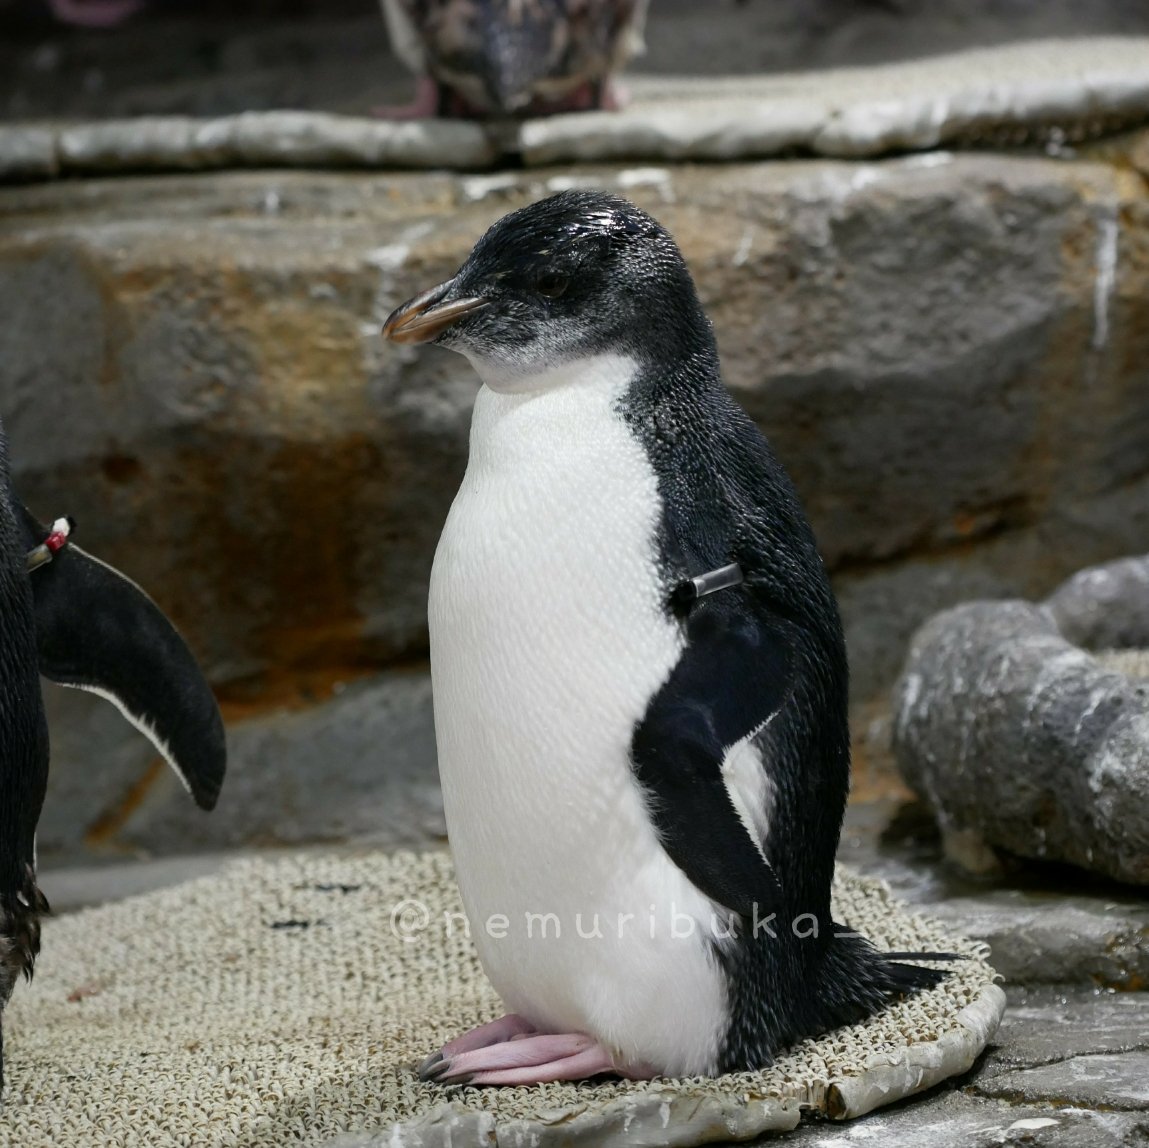 ネムリブカ イワトビヒナちゃん 9 3 ちっちゃーい 眉毛はまだまだ成長途中の亜成鳥さんです 海遊館 ペンギン イワトビペンギン ミナミイワトビペンギン